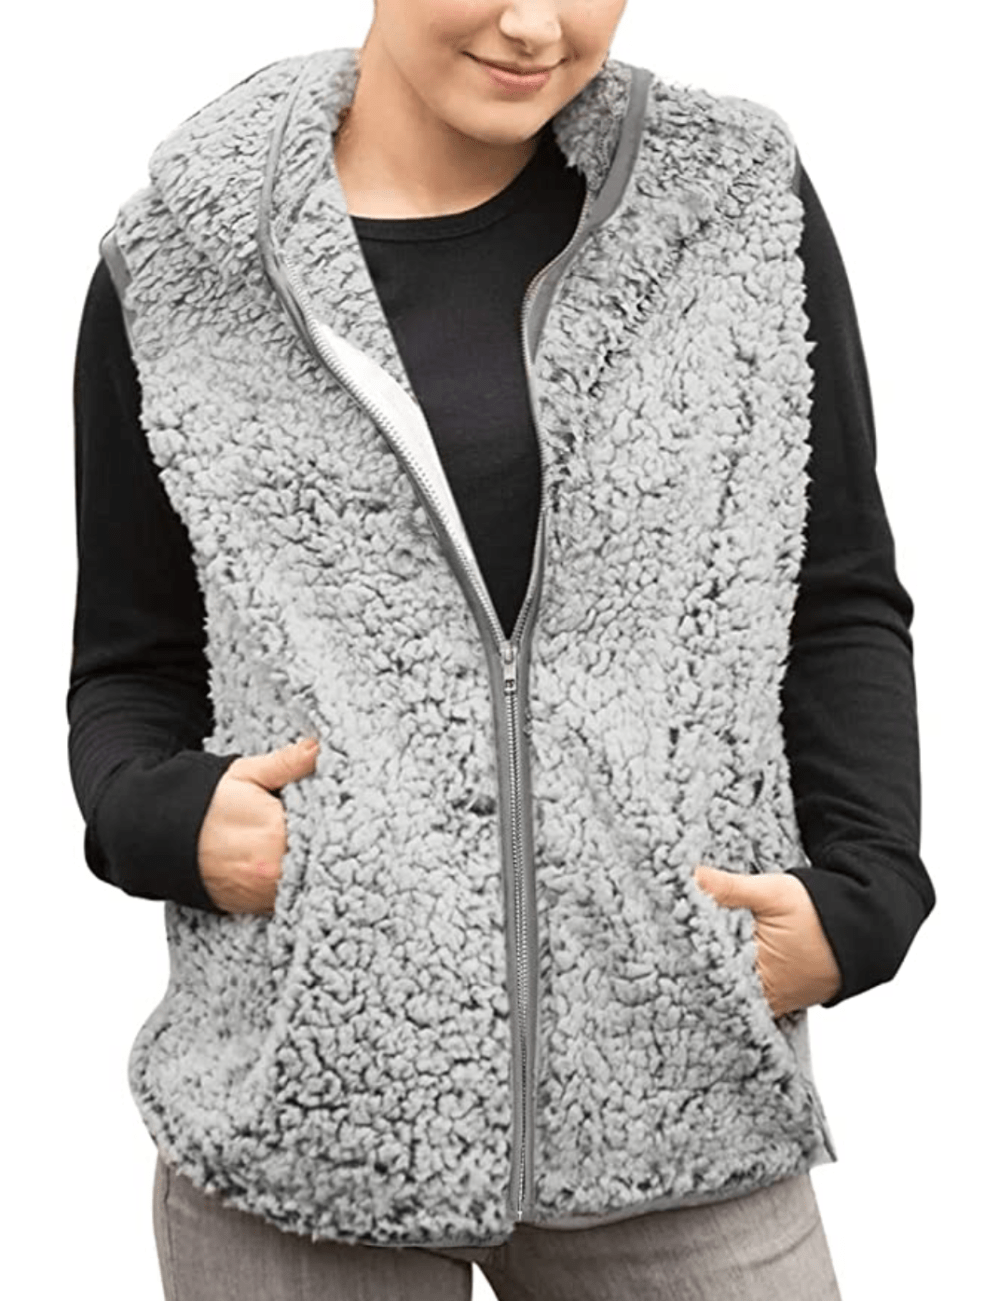 MEROKEETY Women's Casual Sherpa Fleece Lightweight Fall Warm Zipper Vest